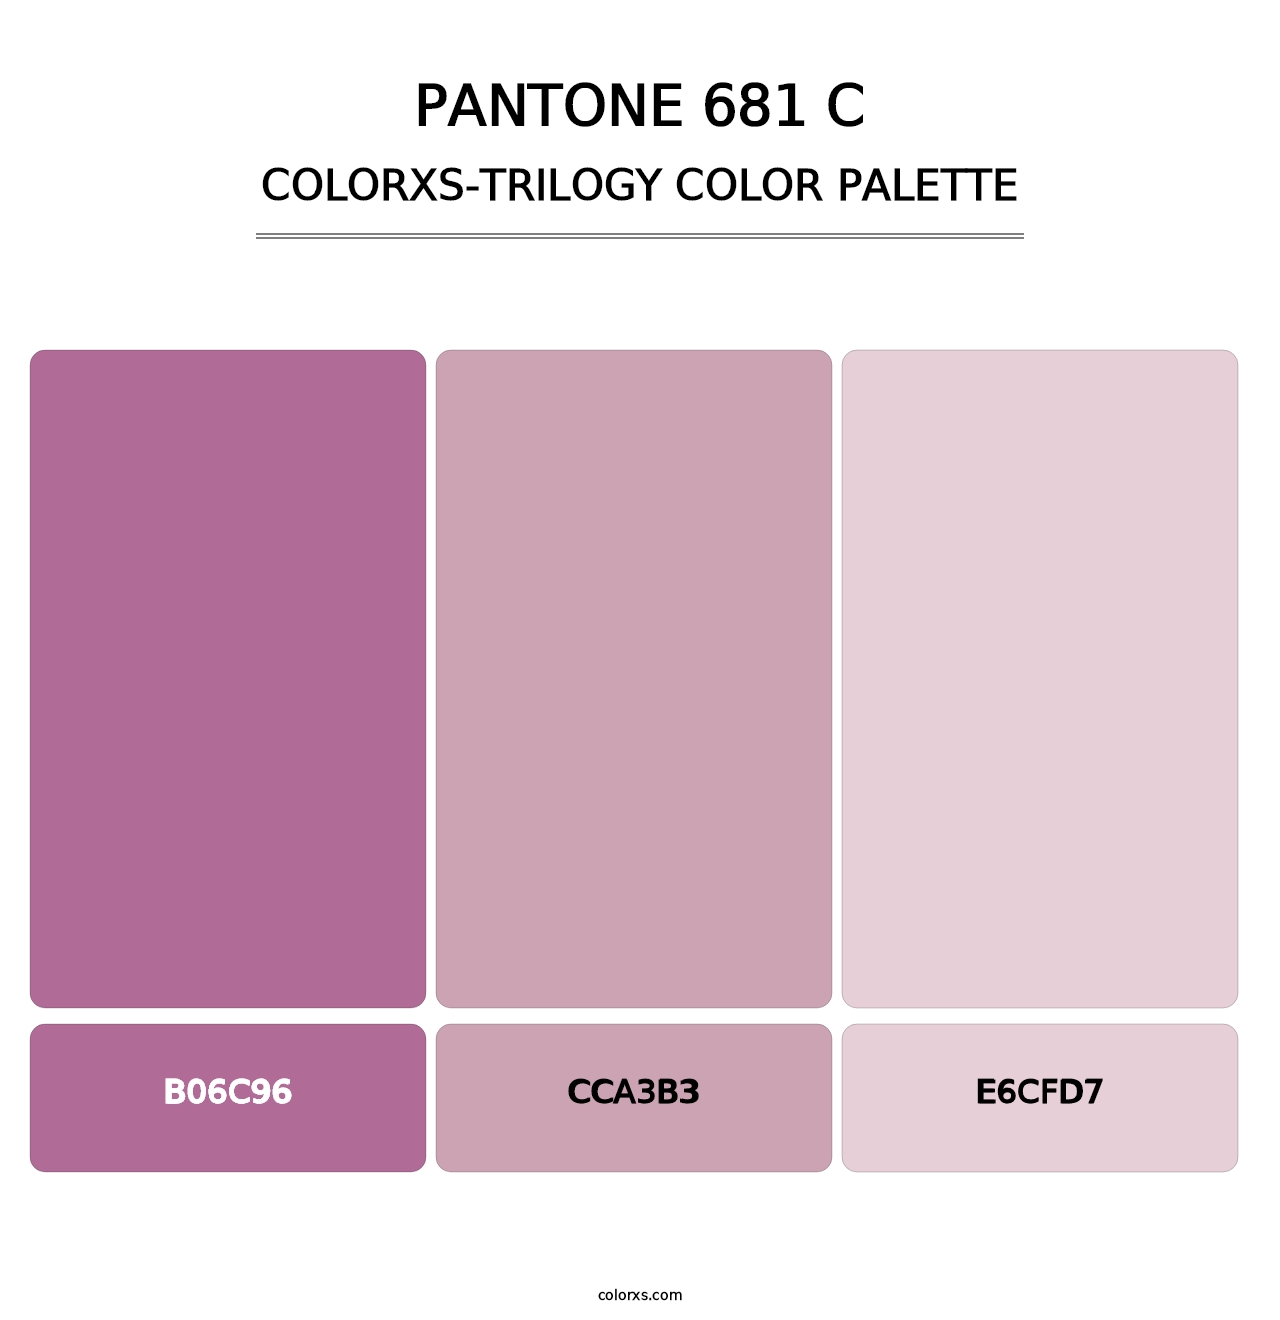 PANTONE 681 C - Colorxs Trilogy Palette